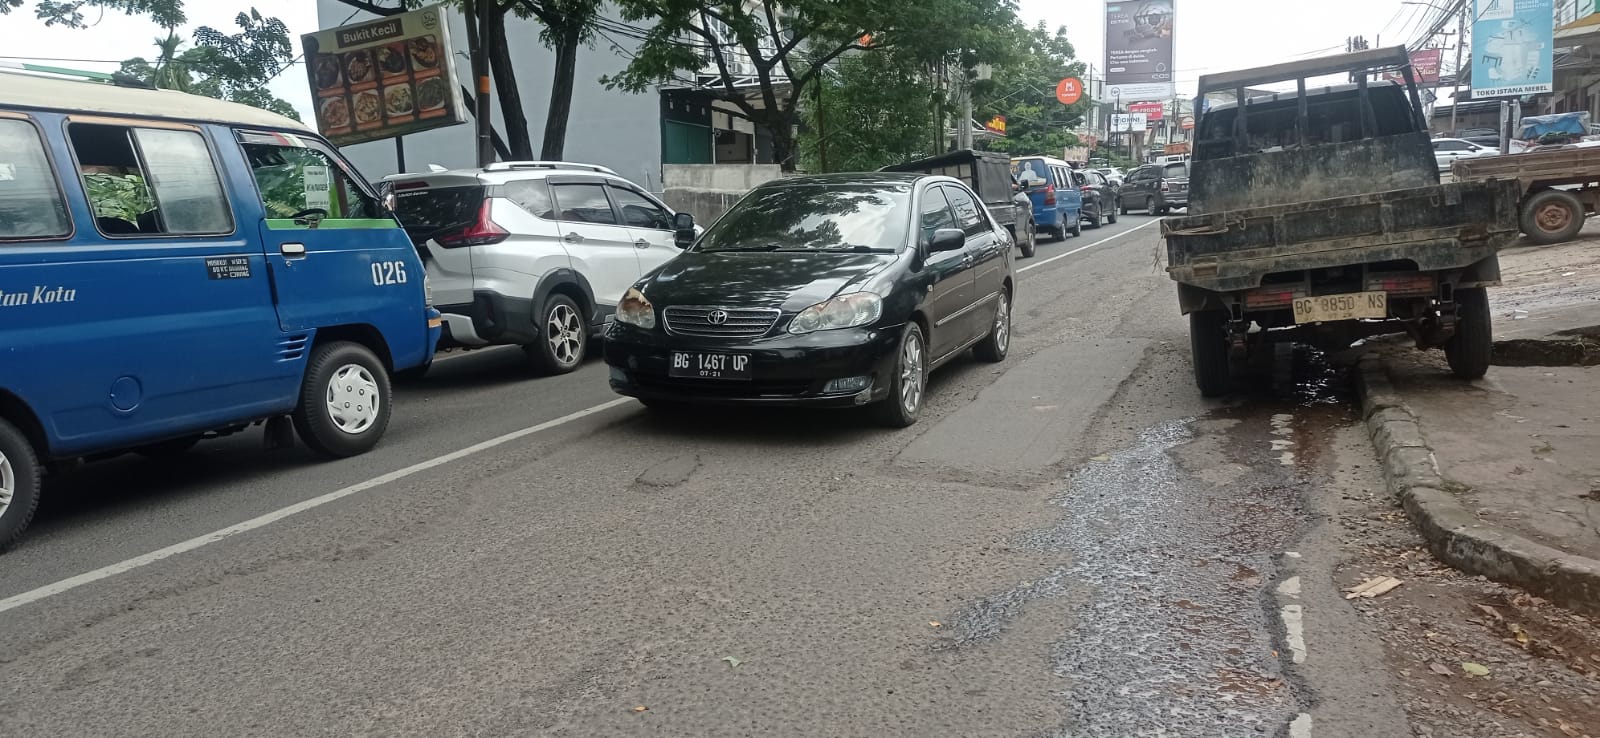  Awal Mei, Perbaikan Jalan Rusak di Palembang Dimulai